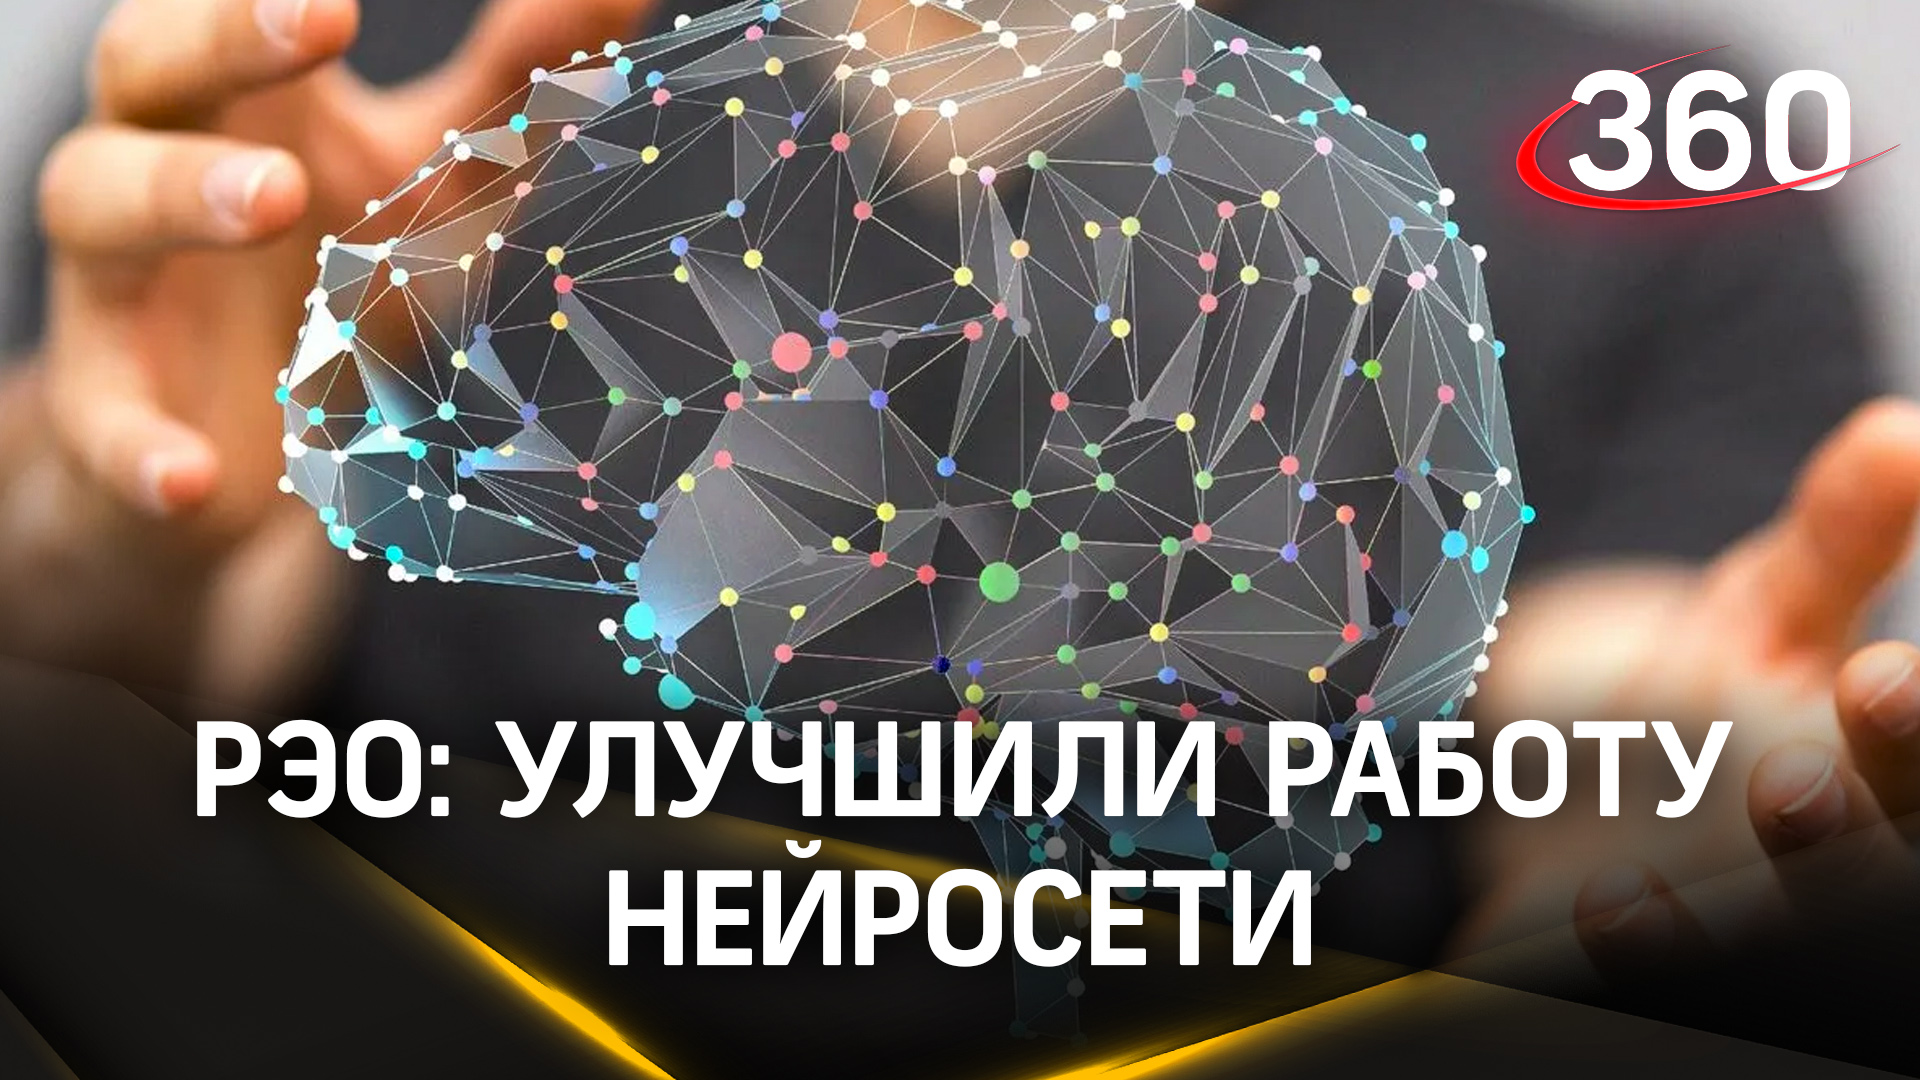 Точность выше 90%: Российский экологический оператор улучшил работу нейросети